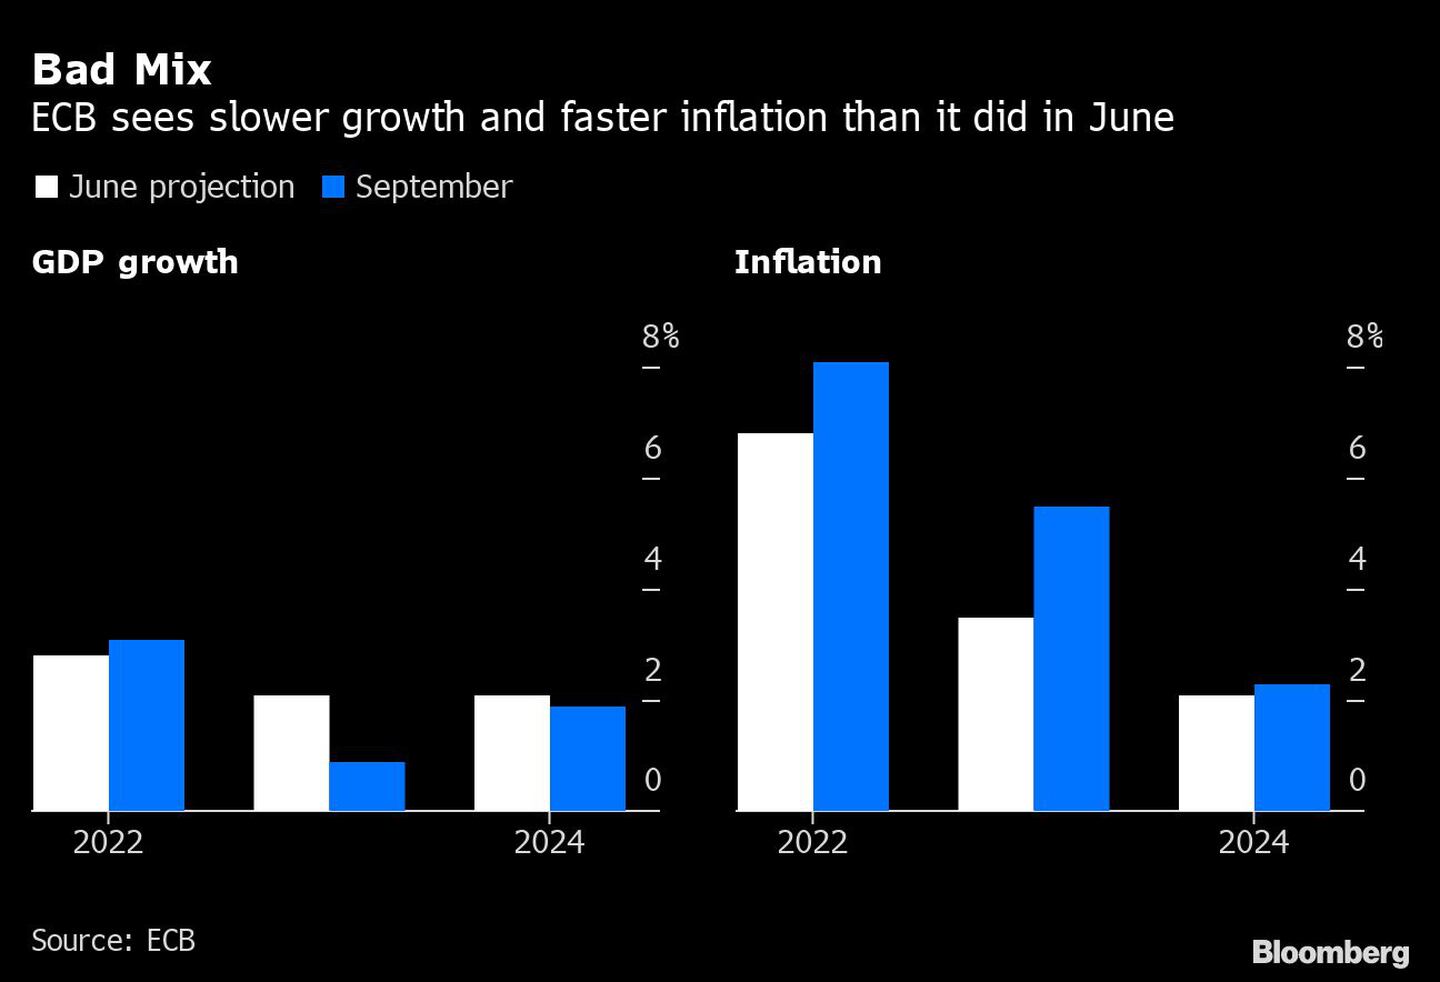 El BCE ve un crecimiento más lento y una inflación más rápida que en juniodfd